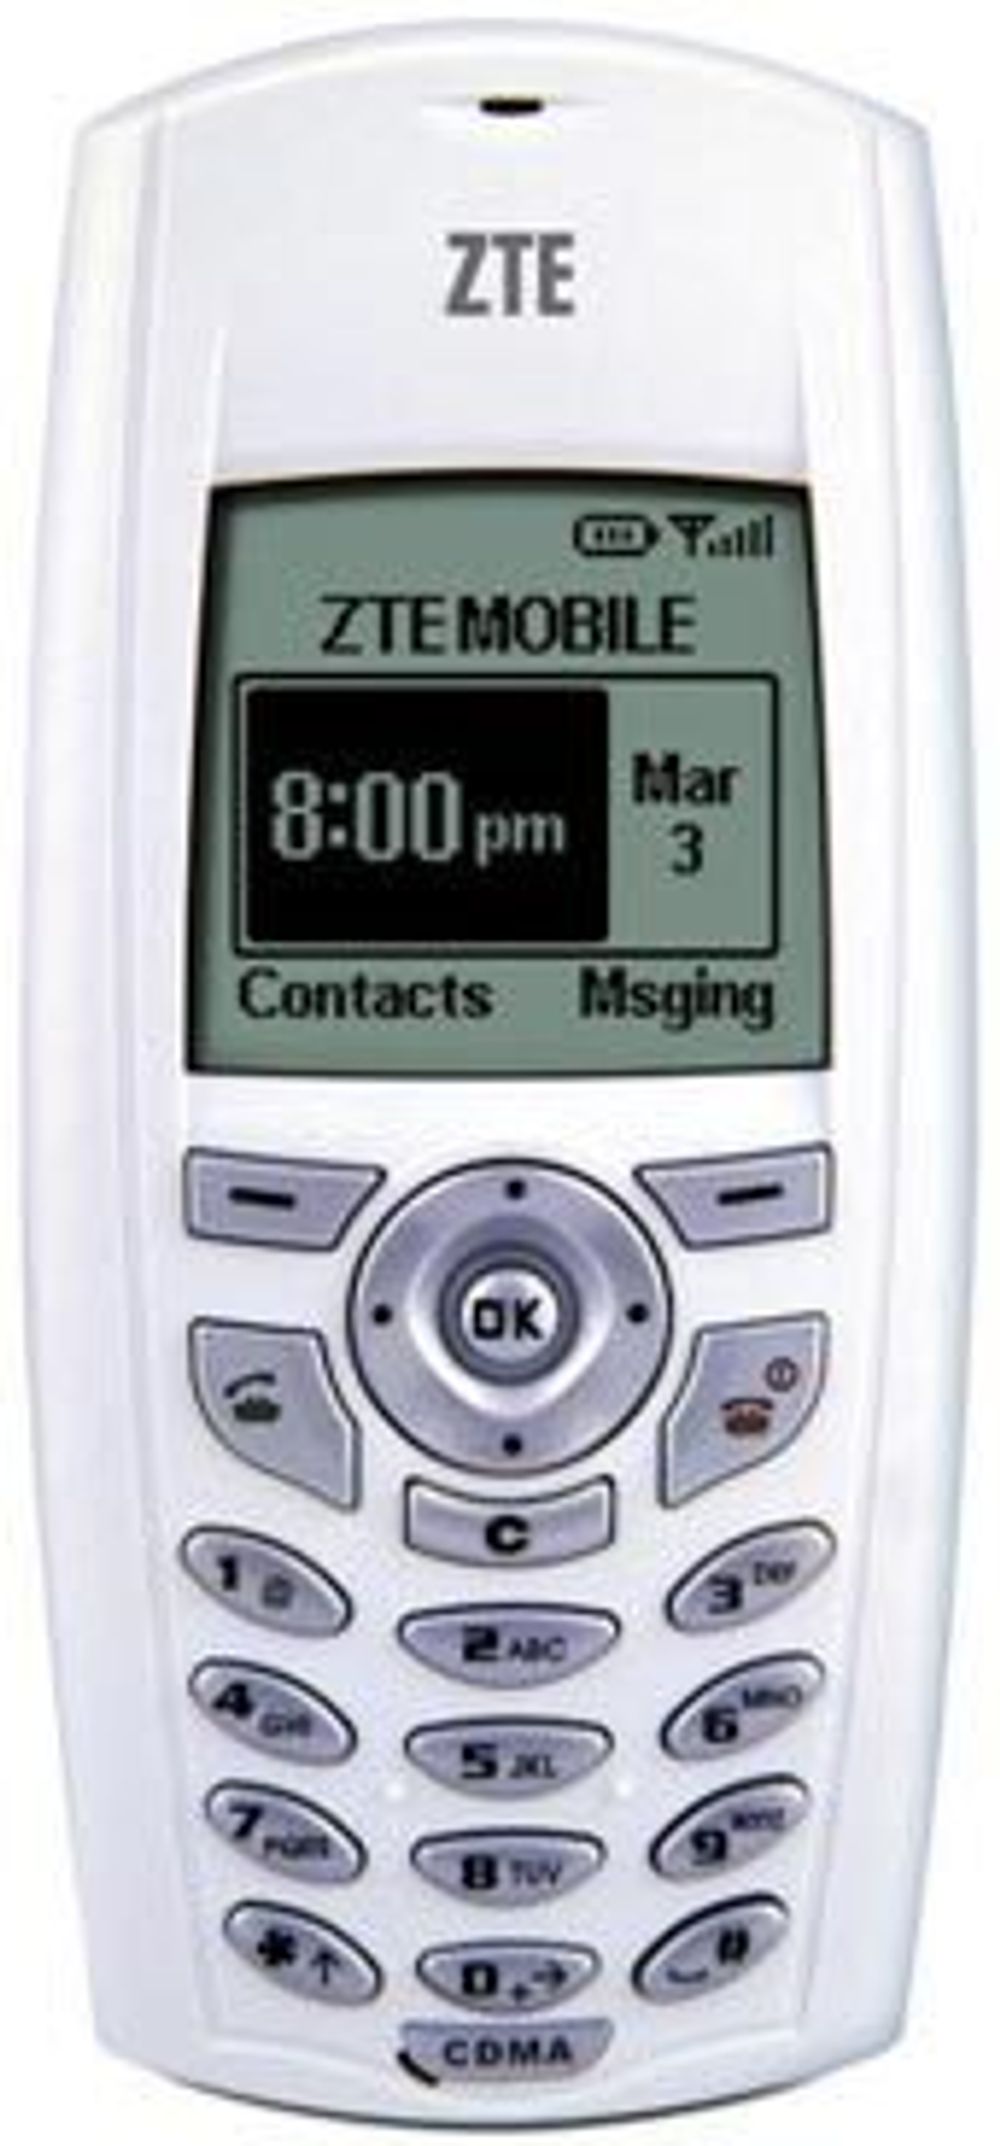 Slike CDMA-telefoner har ZTE i sitt produktsortiment, som Nordisk Mobiltelefoni skal samarbeide med.